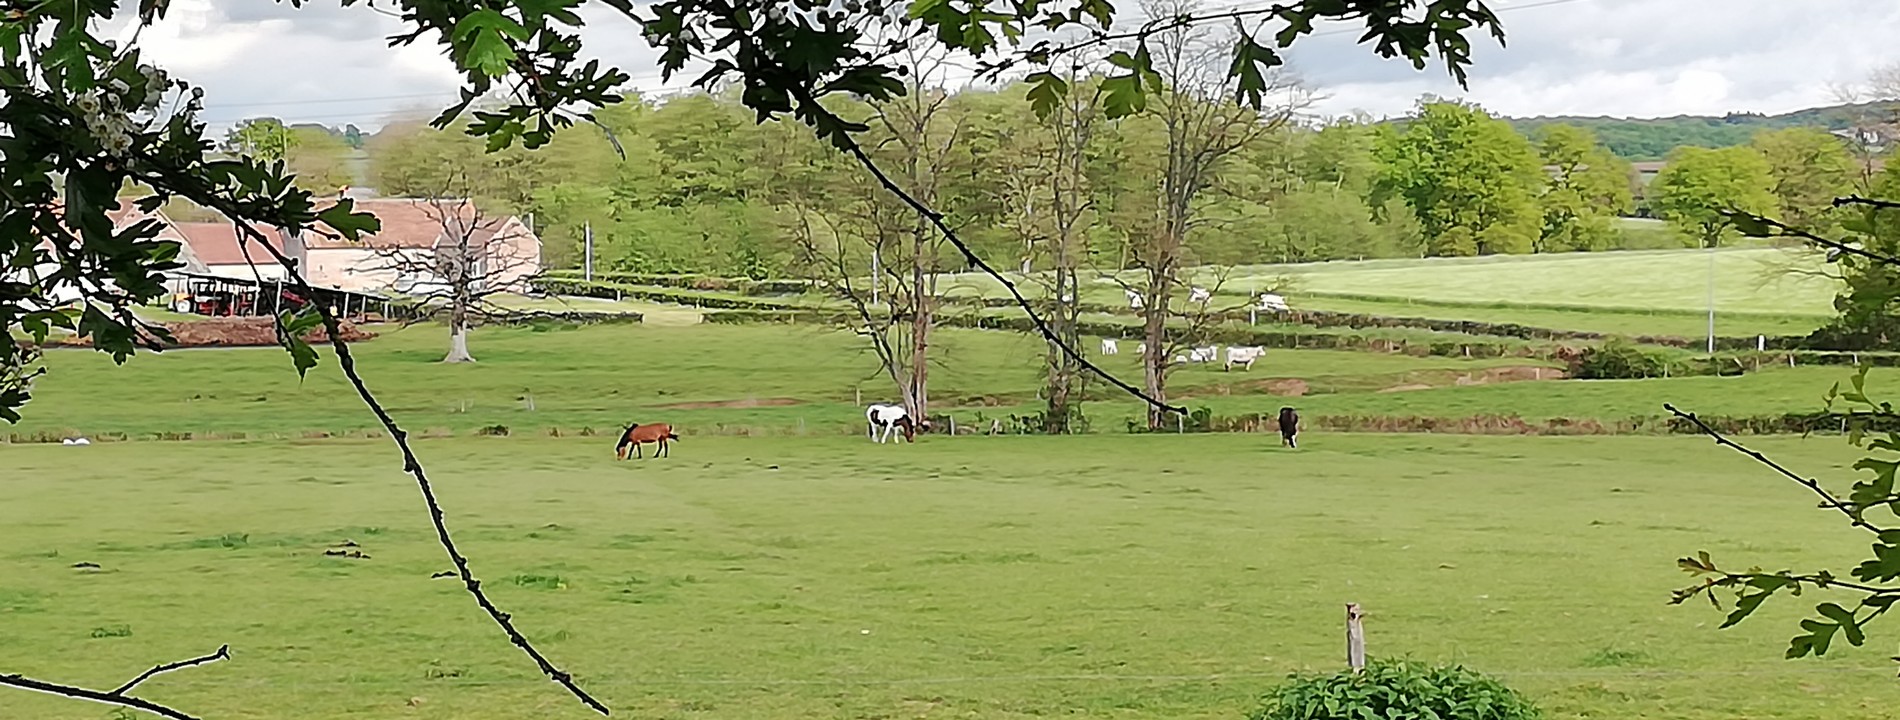 Les chevaux au près à la ferme equestre du berger